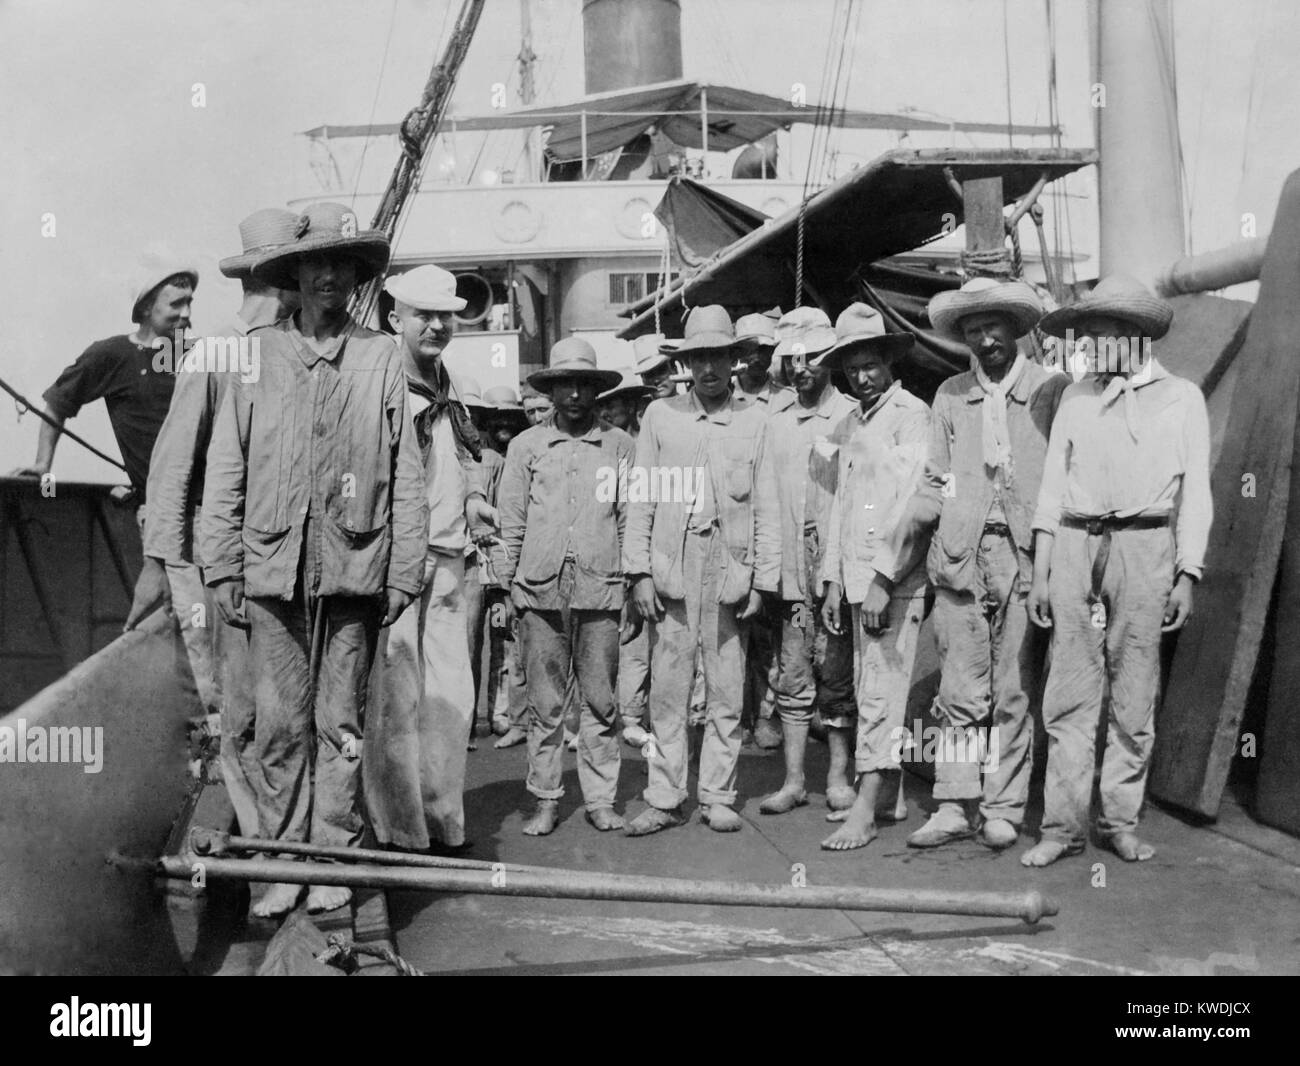 Spanischen Gefangenen an Bord der Collier (Kohle Schiff) Abarenda in Guantanamo, 14. Juni 1898. Uns vereinbart Die spanische Garnison zurück nach Spanien, um in Bezug auf die Übergabe an Santiago (BSLOC 2017 10 57) Stockfoto